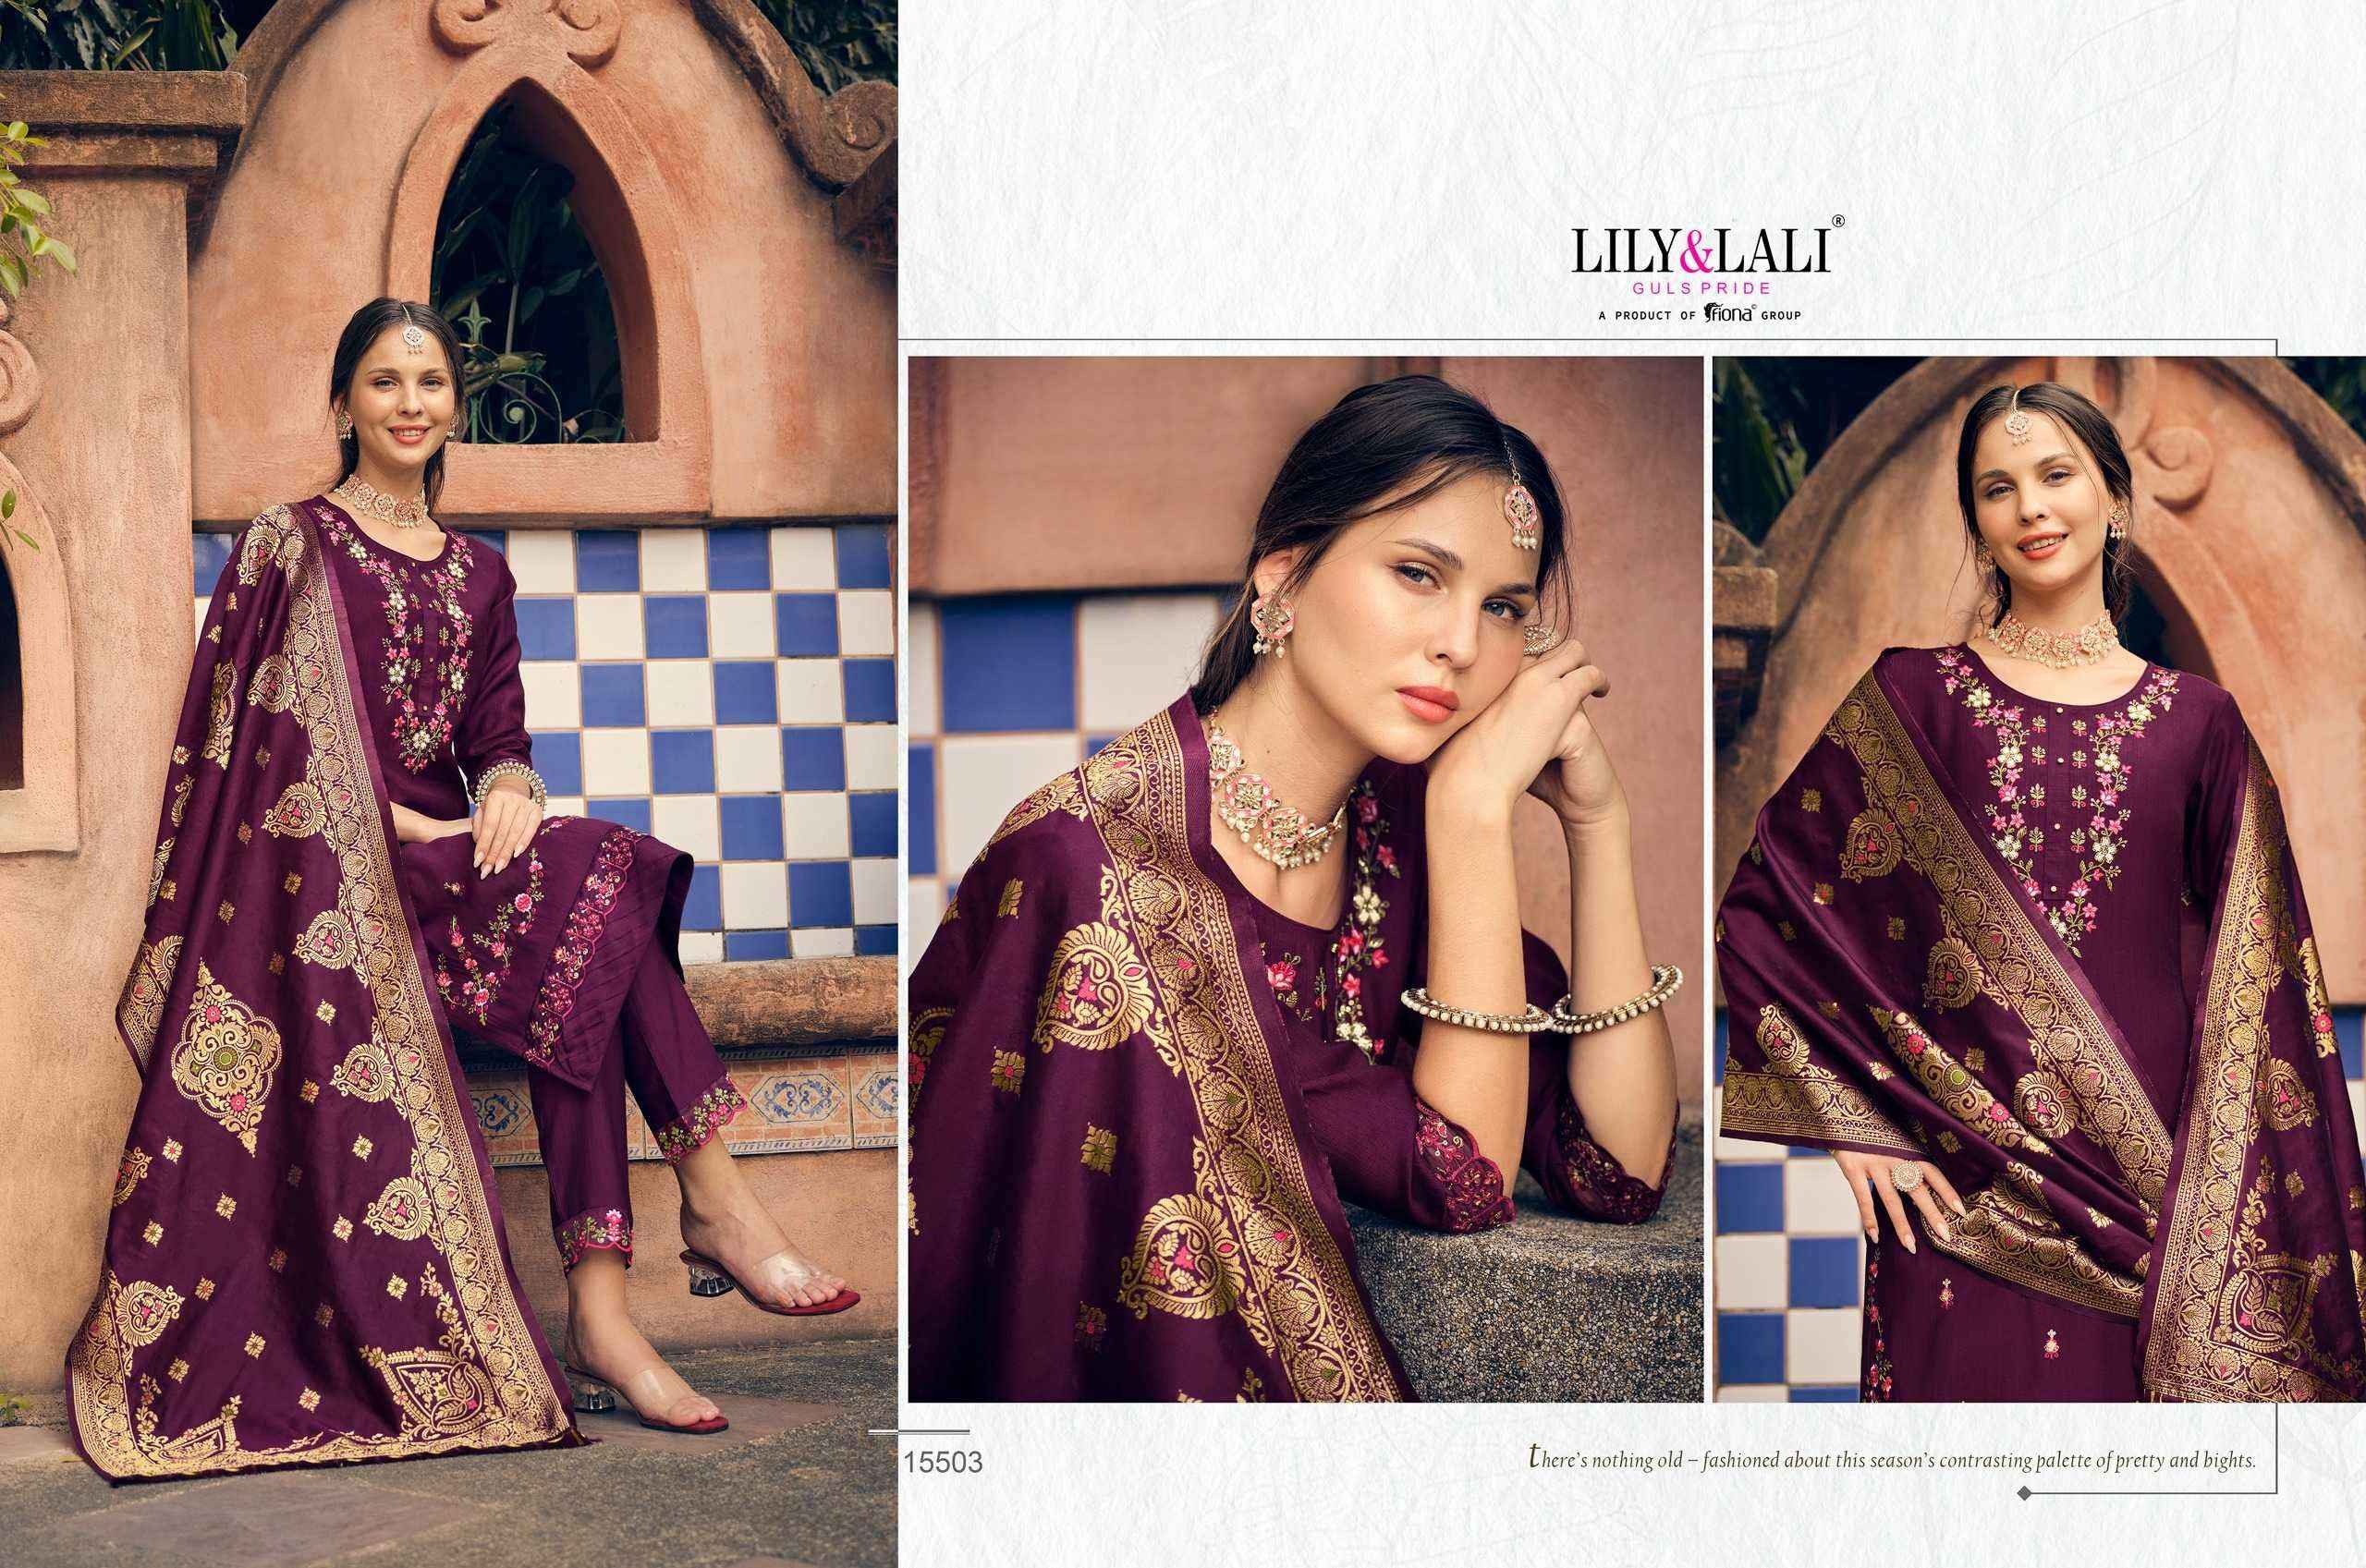 Lily & Lali Hasmeena Vol 2 Readymade Organza Dress 6 pcs Catalogue